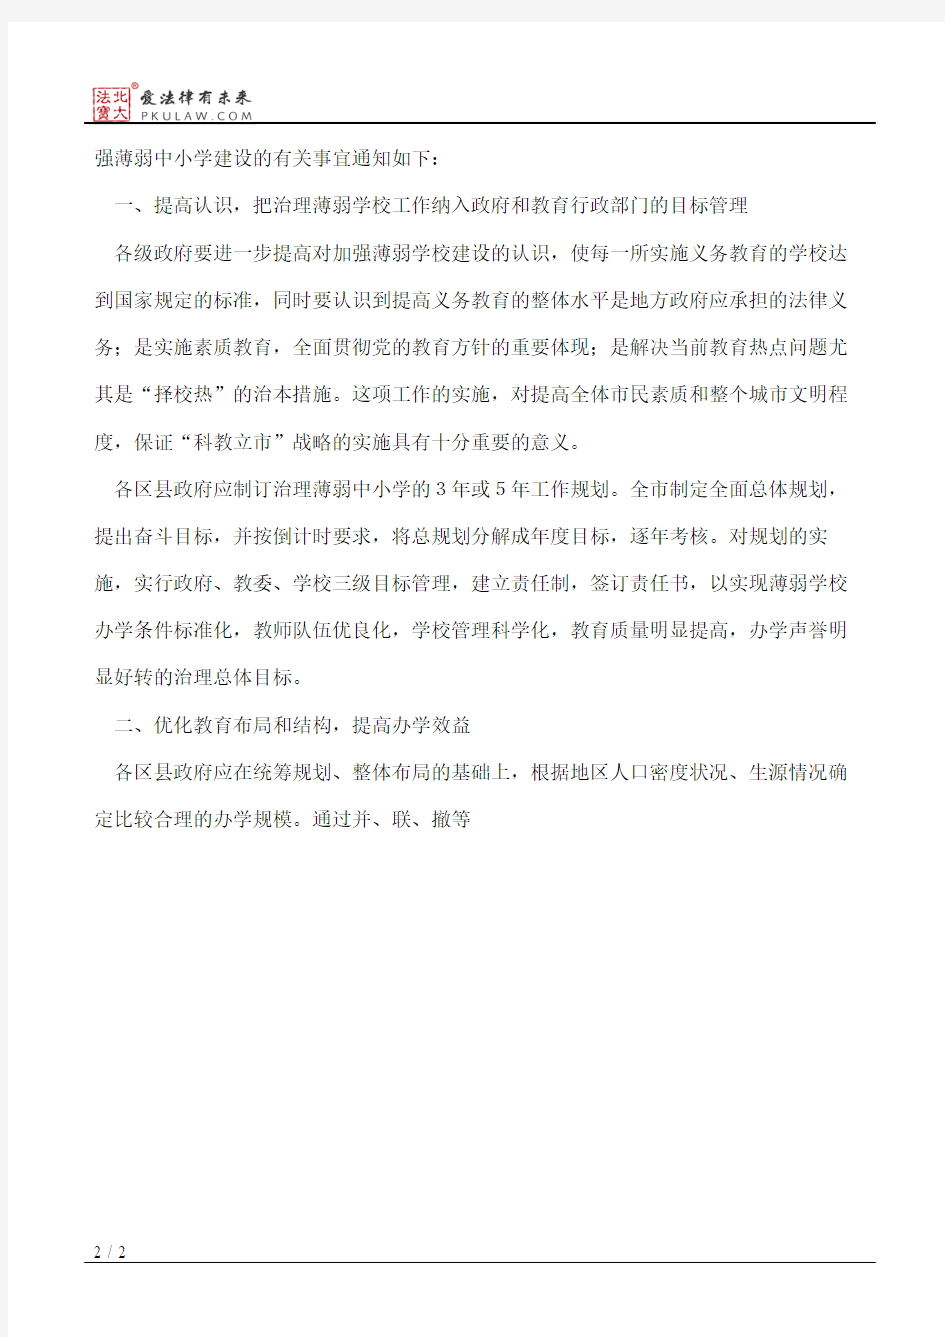 武汉市人民政府办公厅关于进一步加强薄弱中小学建设的通知